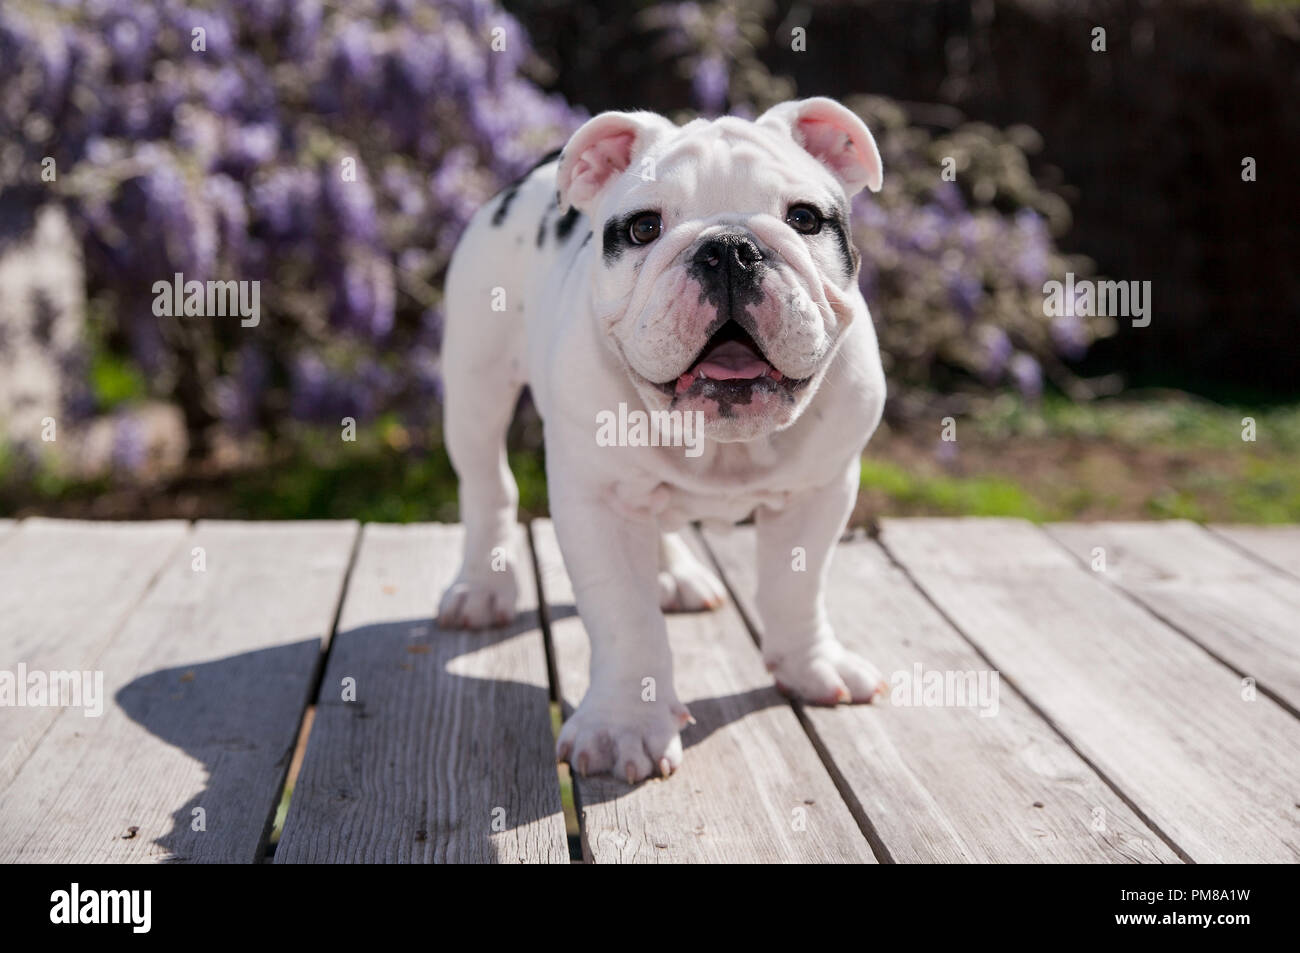 Schwarz & Weiß baby Bulldogge Welpe Hund lächelnd an Deck nach vorne stehen. Er steht vor der Wisteria Reben in Lavendel und violetten Reflexen. Stockfoto